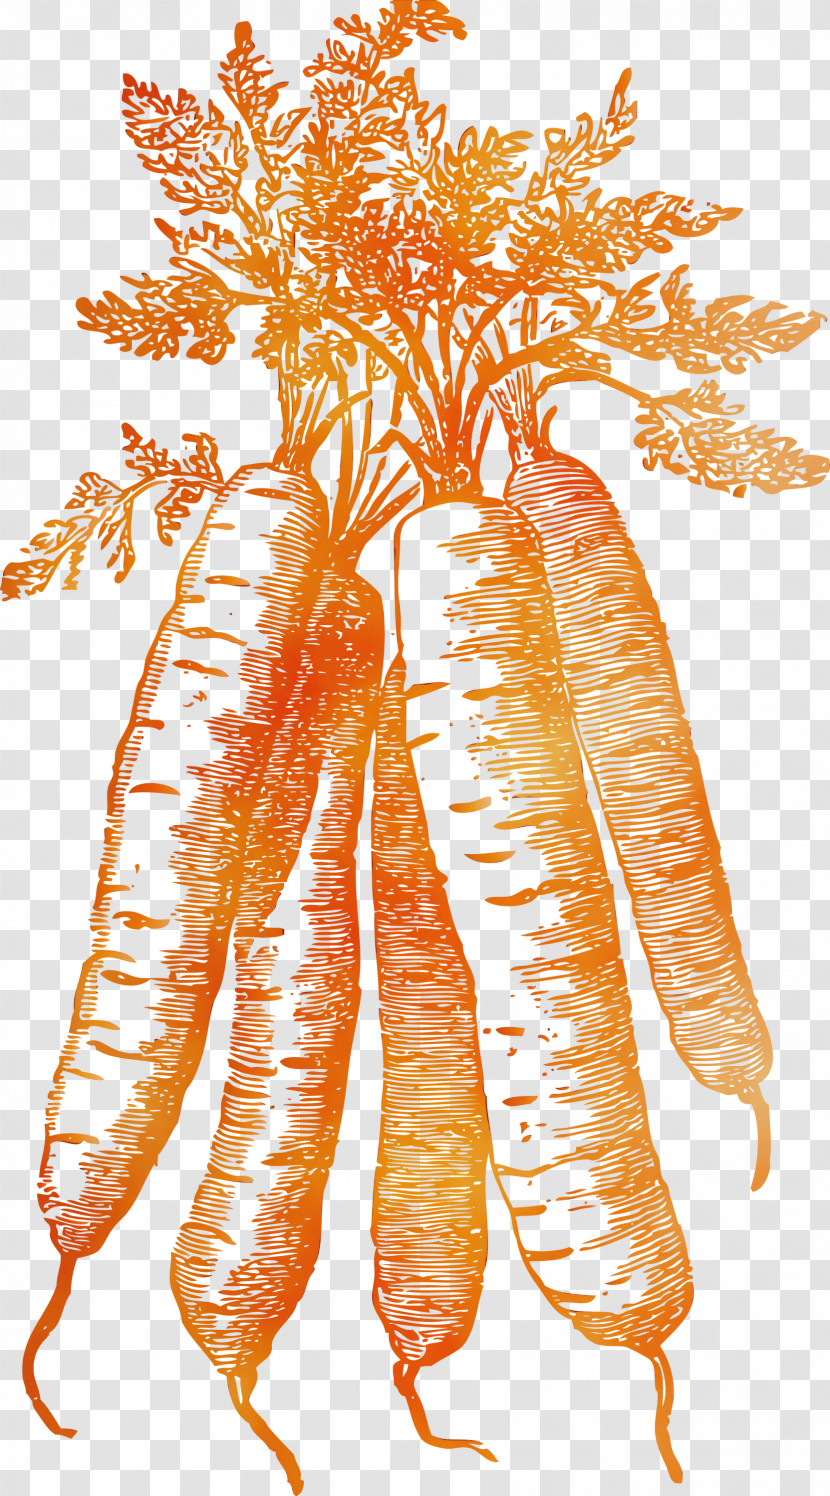 Carrot Transparent PNG